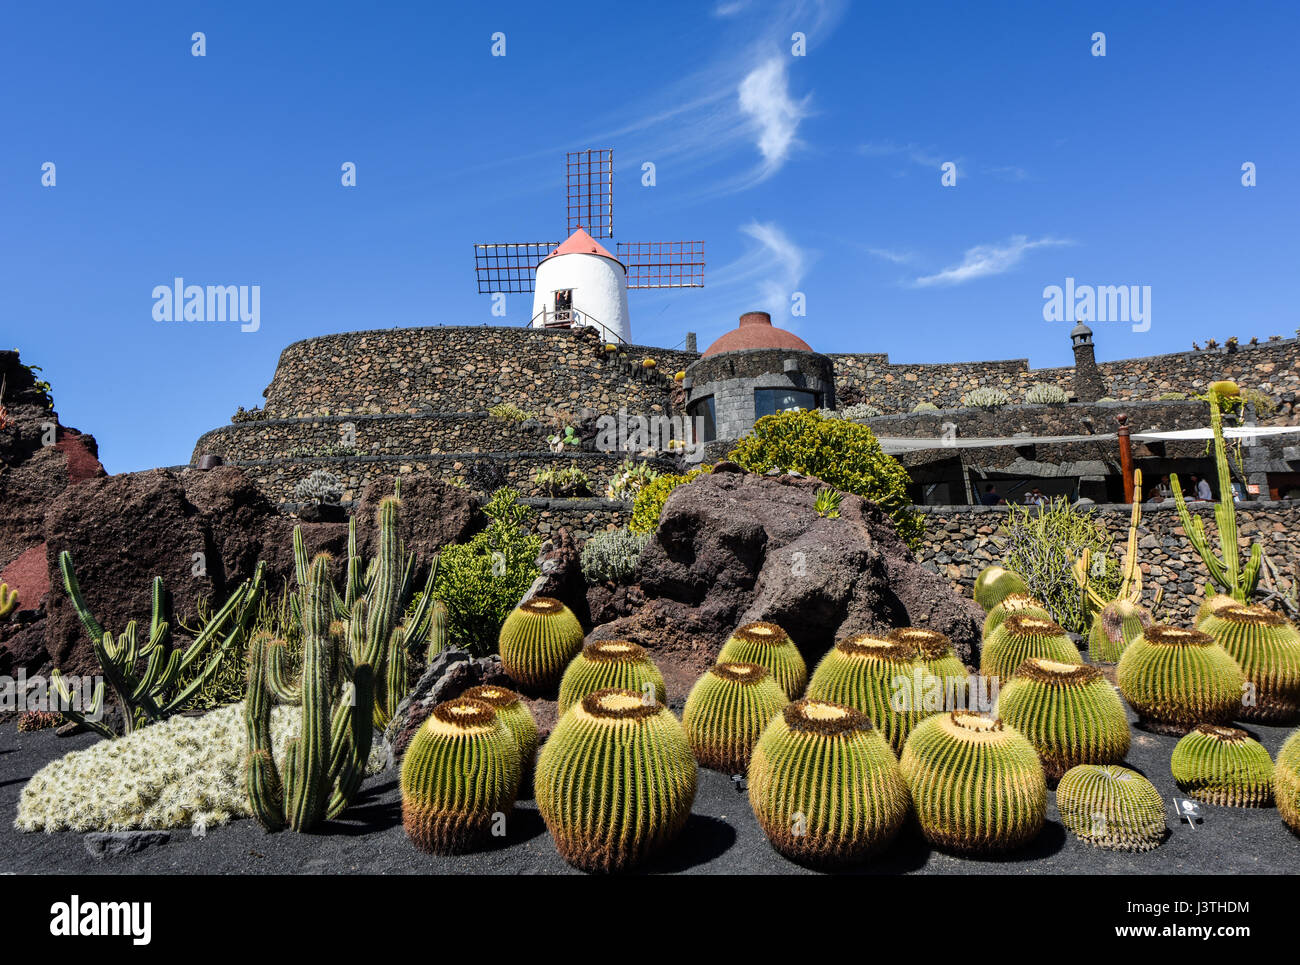 Bellamente diseñado al jardín de cactus en Lanzarote con molino de viento en el fondo. Guatizia, Lanzarote, Islas Canarias, España, Europa Foto de stock